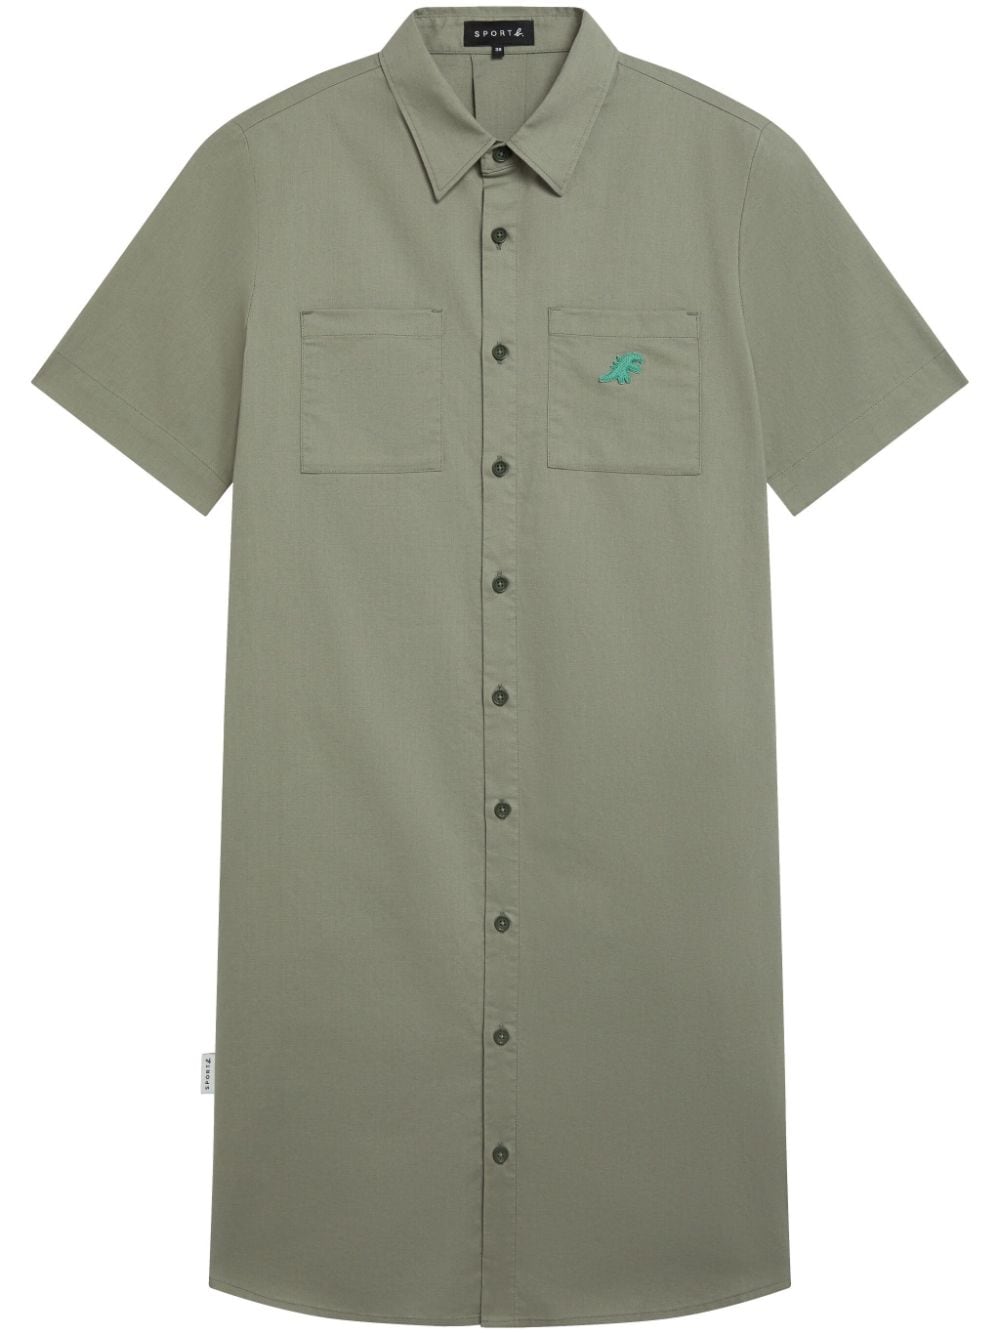 Dino Worker shirt dress